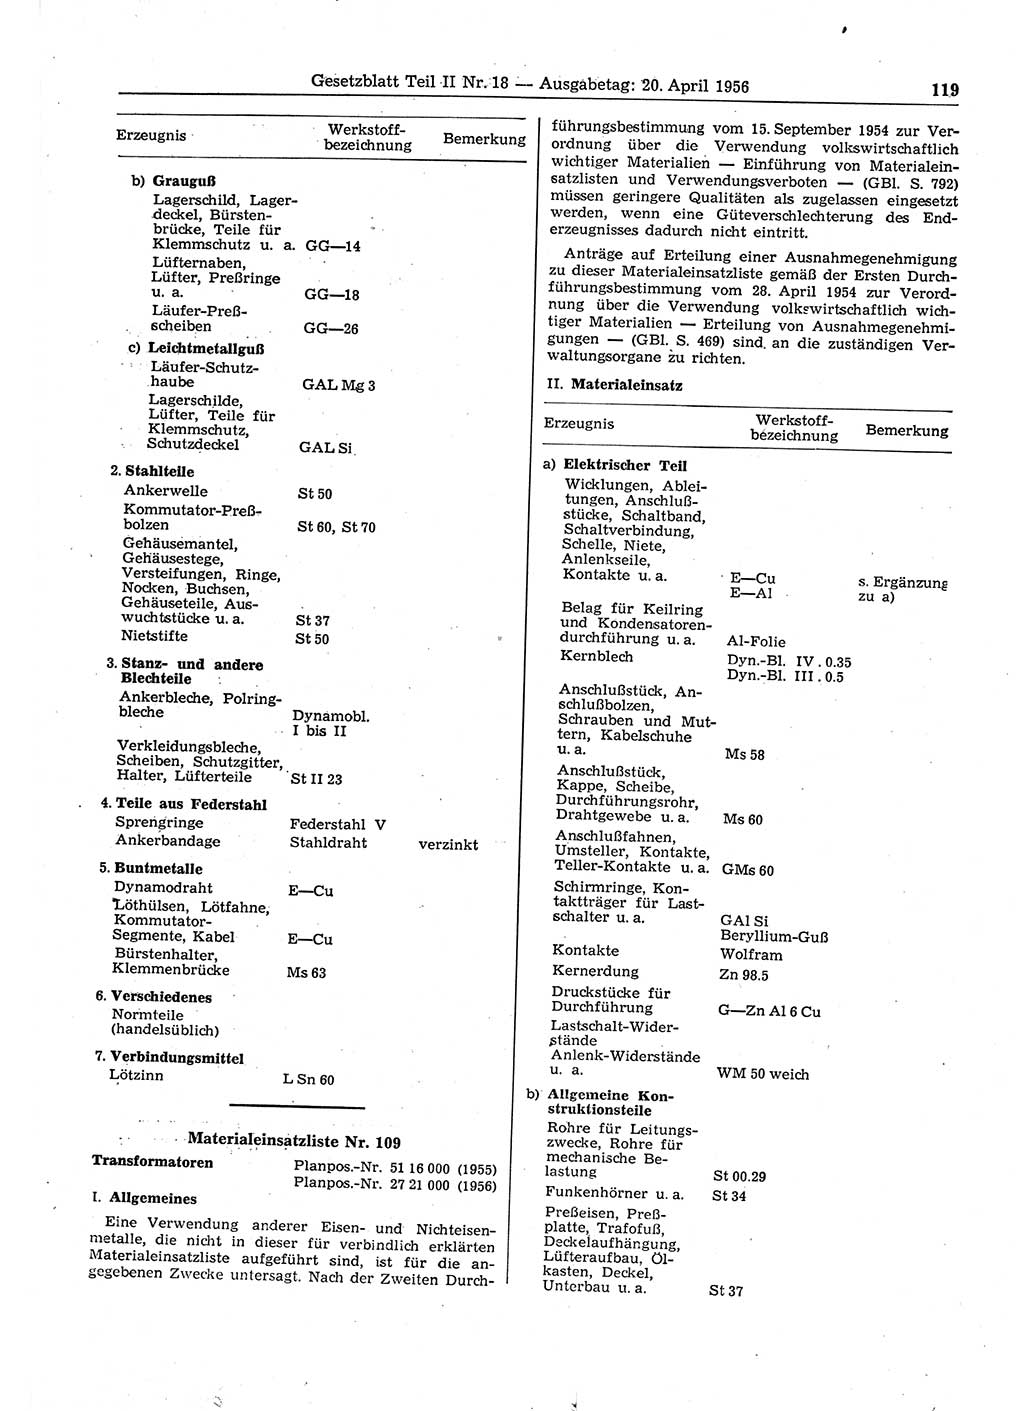 Gesetzblatt (GBl.) der Deutschen Demokratischen Republik (DDR) Teil ⅠⅠ 1956, Seite 119 (GBl. DDR ⅠⅠ 1956, S. 119)